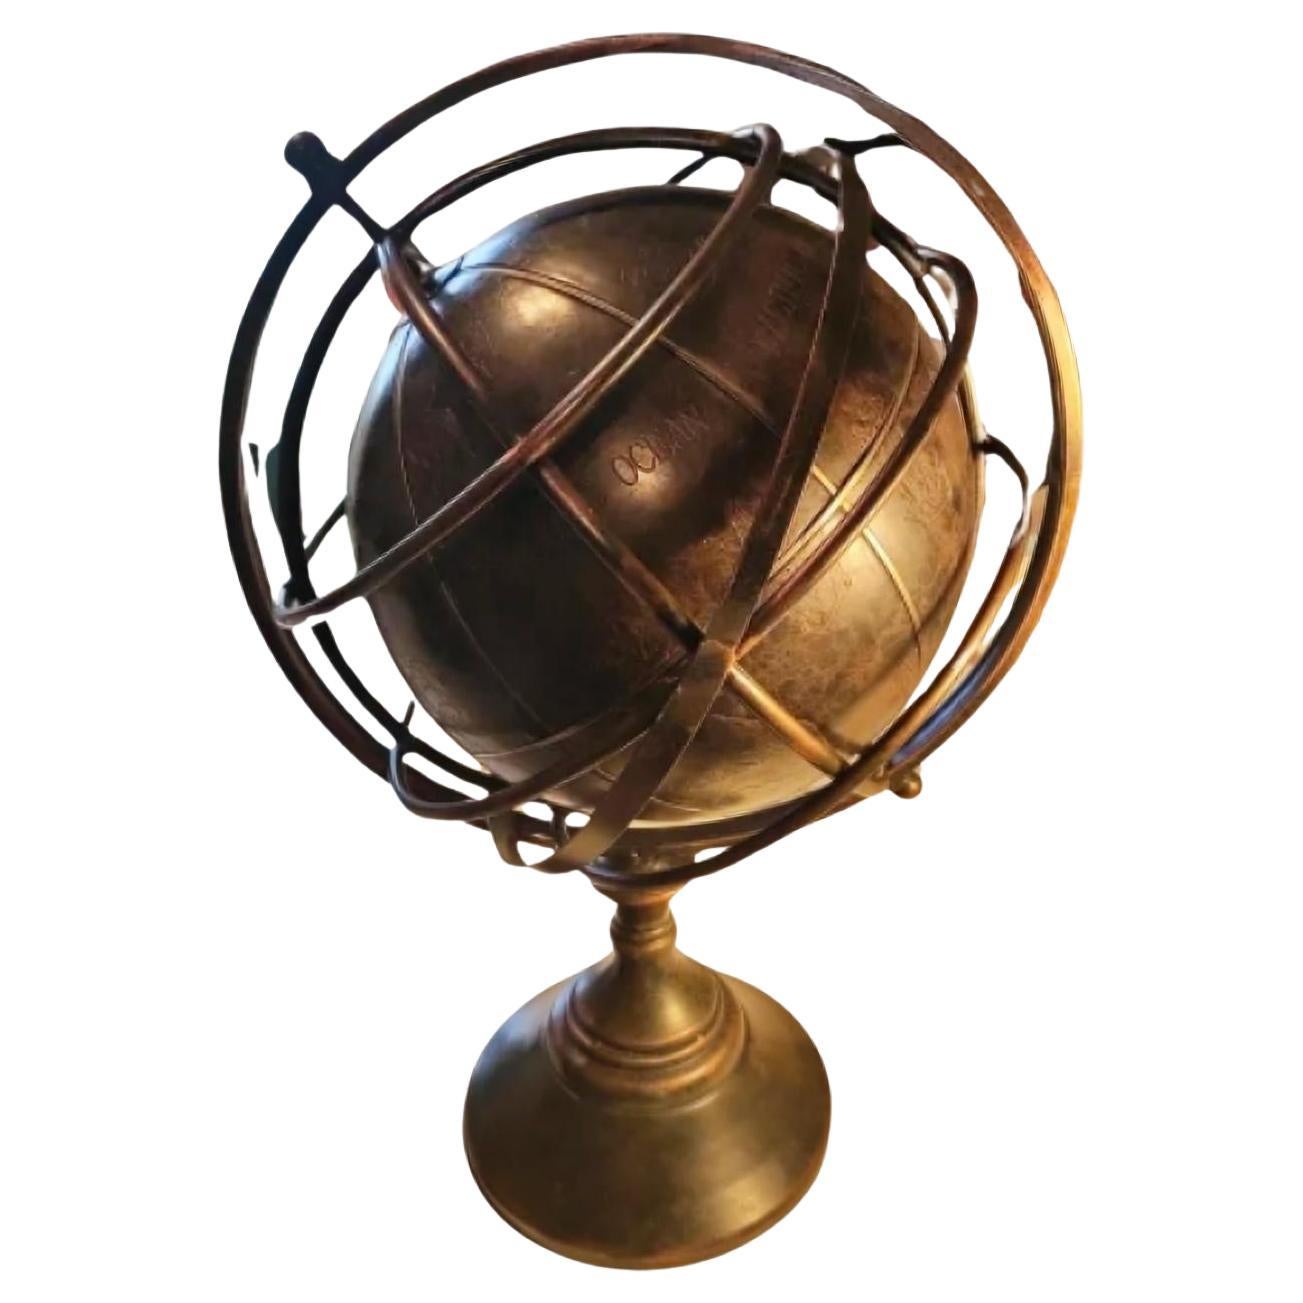 Seltener englischer nautischer Globus mit Armillary-Kugel (1930) aus dem 20. Jahrhundert